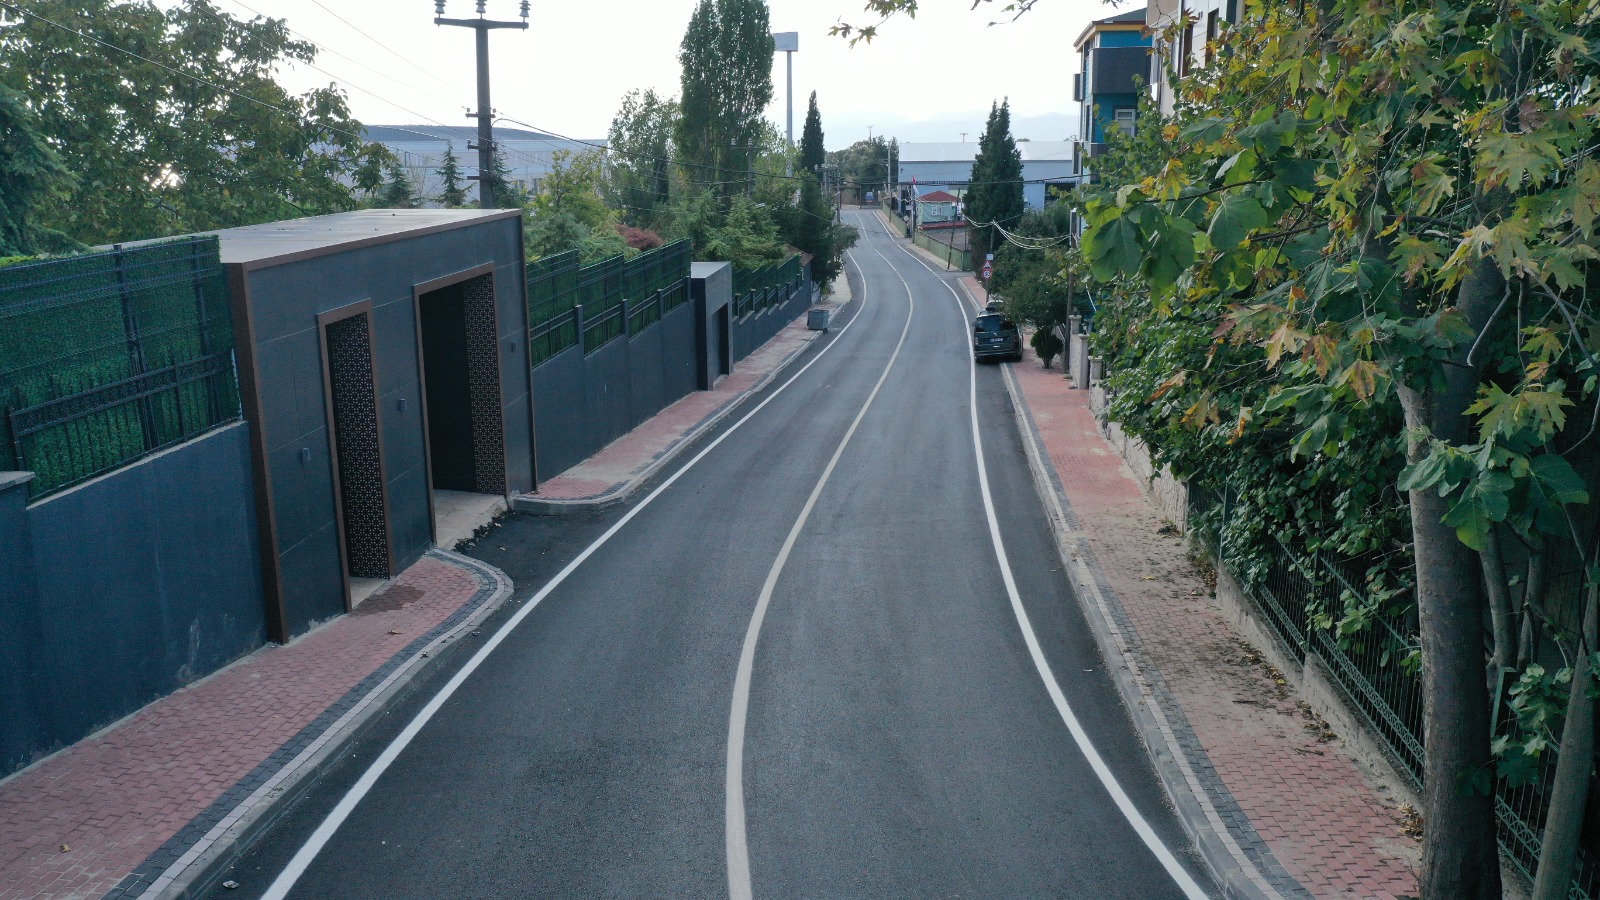   Darıca Körfez Caddesi’nde yol çizgileri çizildi